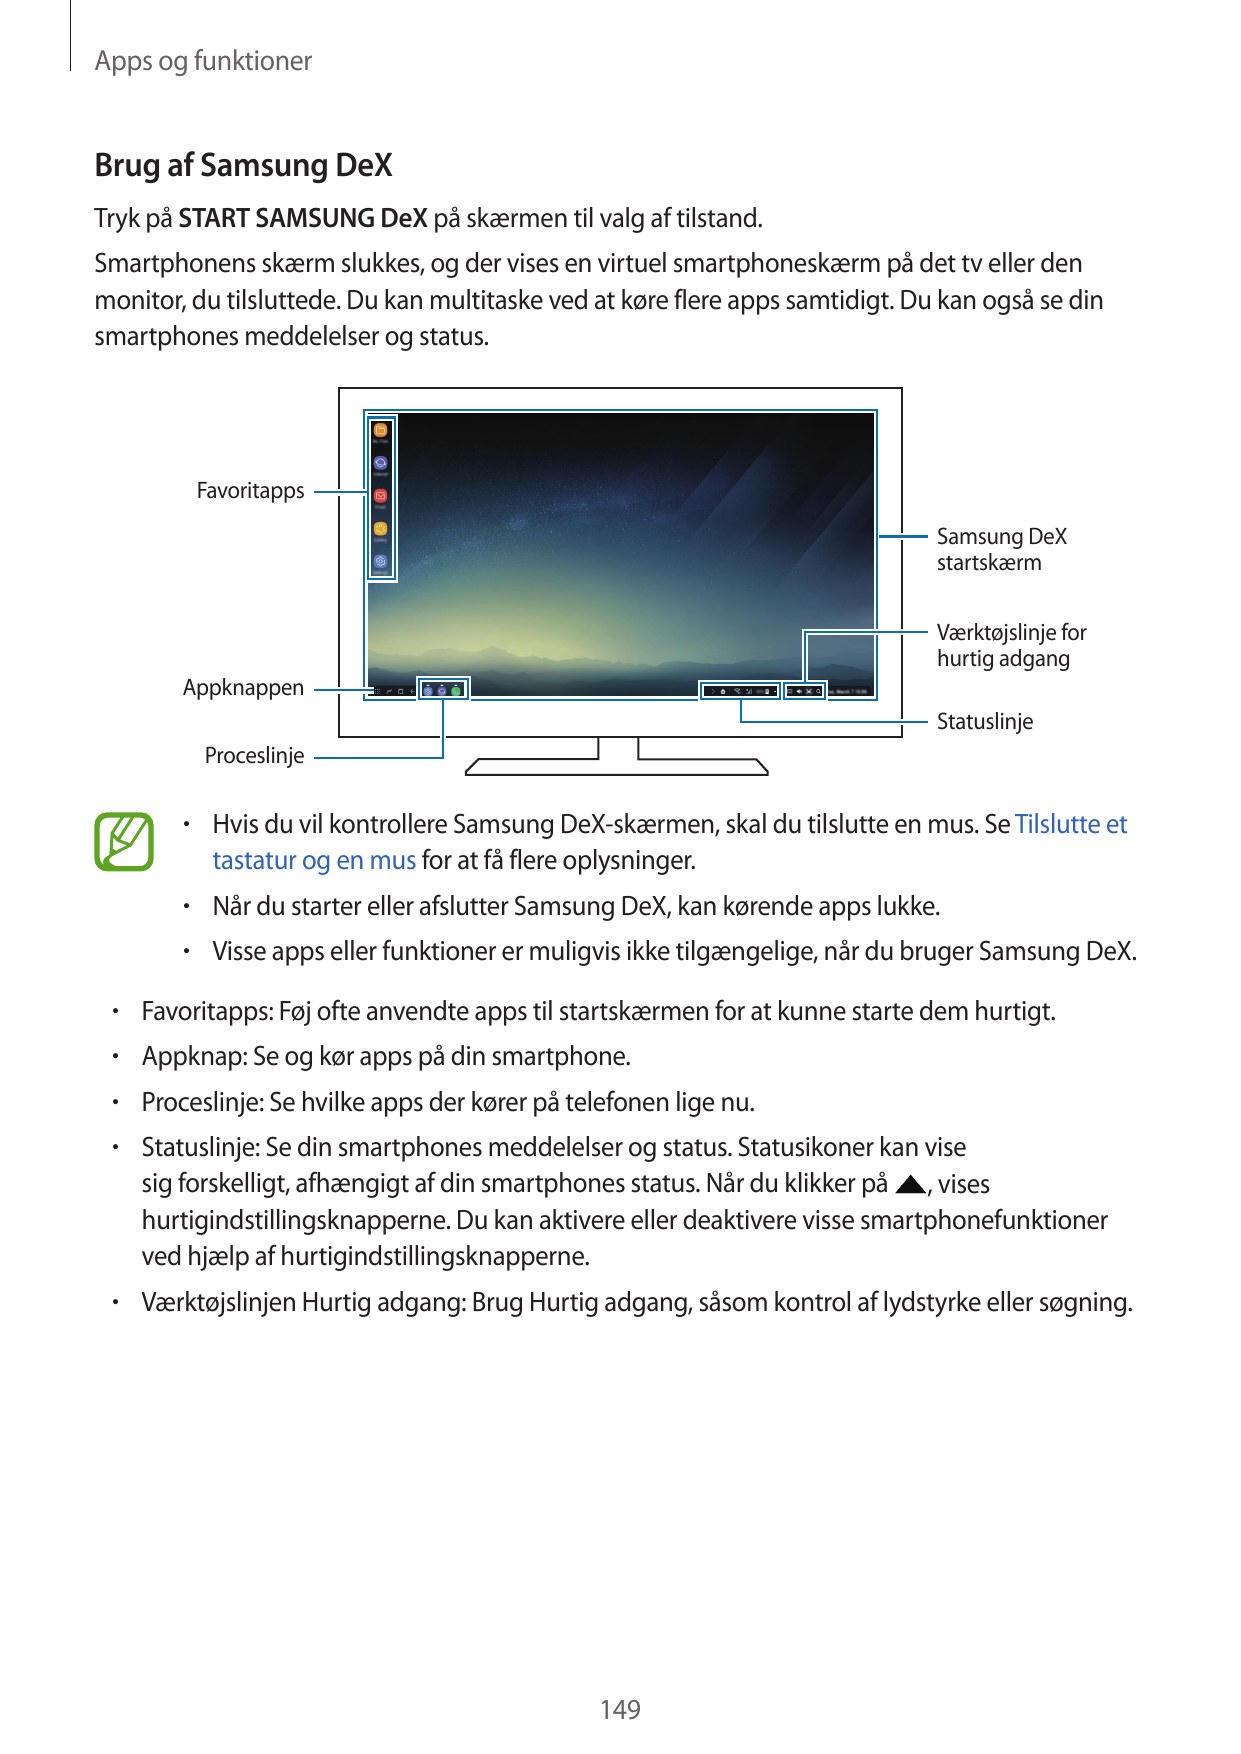 Apps og funktionerBrug af Samsung DeXTryk på START SAMSUNG DeX på skærmen til valg af tilstand.Smartphonens skærm slukkes, og de